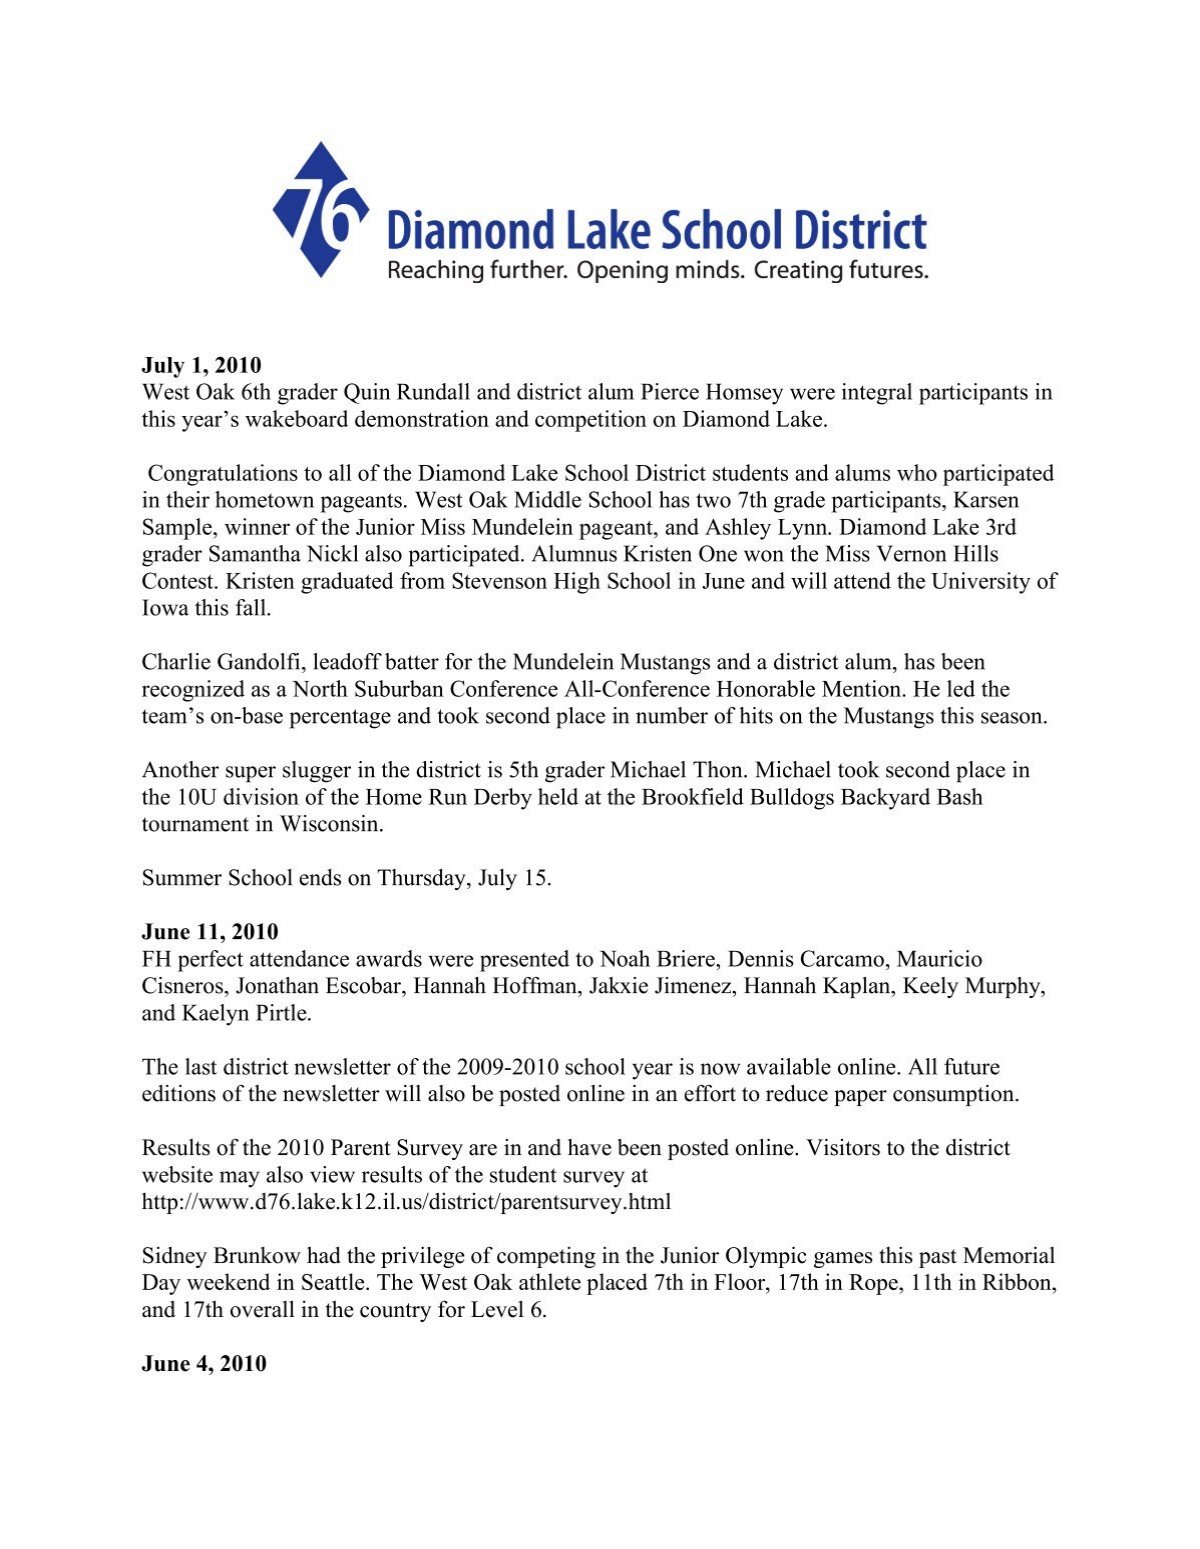 July 1 10 Diamond Lake School District 76